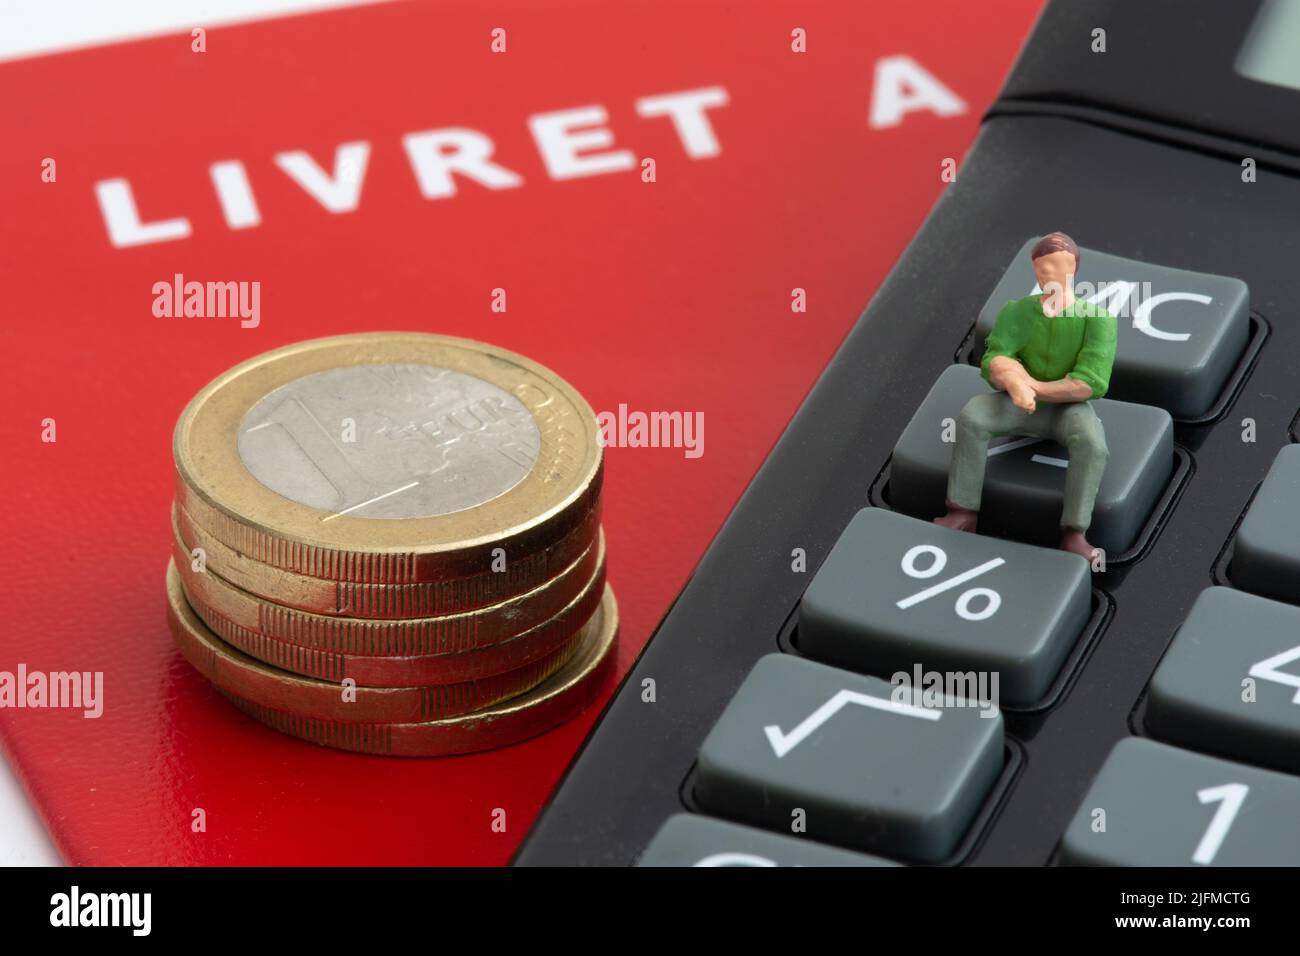 Figurine seduta su una calcolatrice vicino a una pila di monete in euro e un francese livret A. concetti di inflazione, risparmio e livret A tassi di interesse Foto Stock